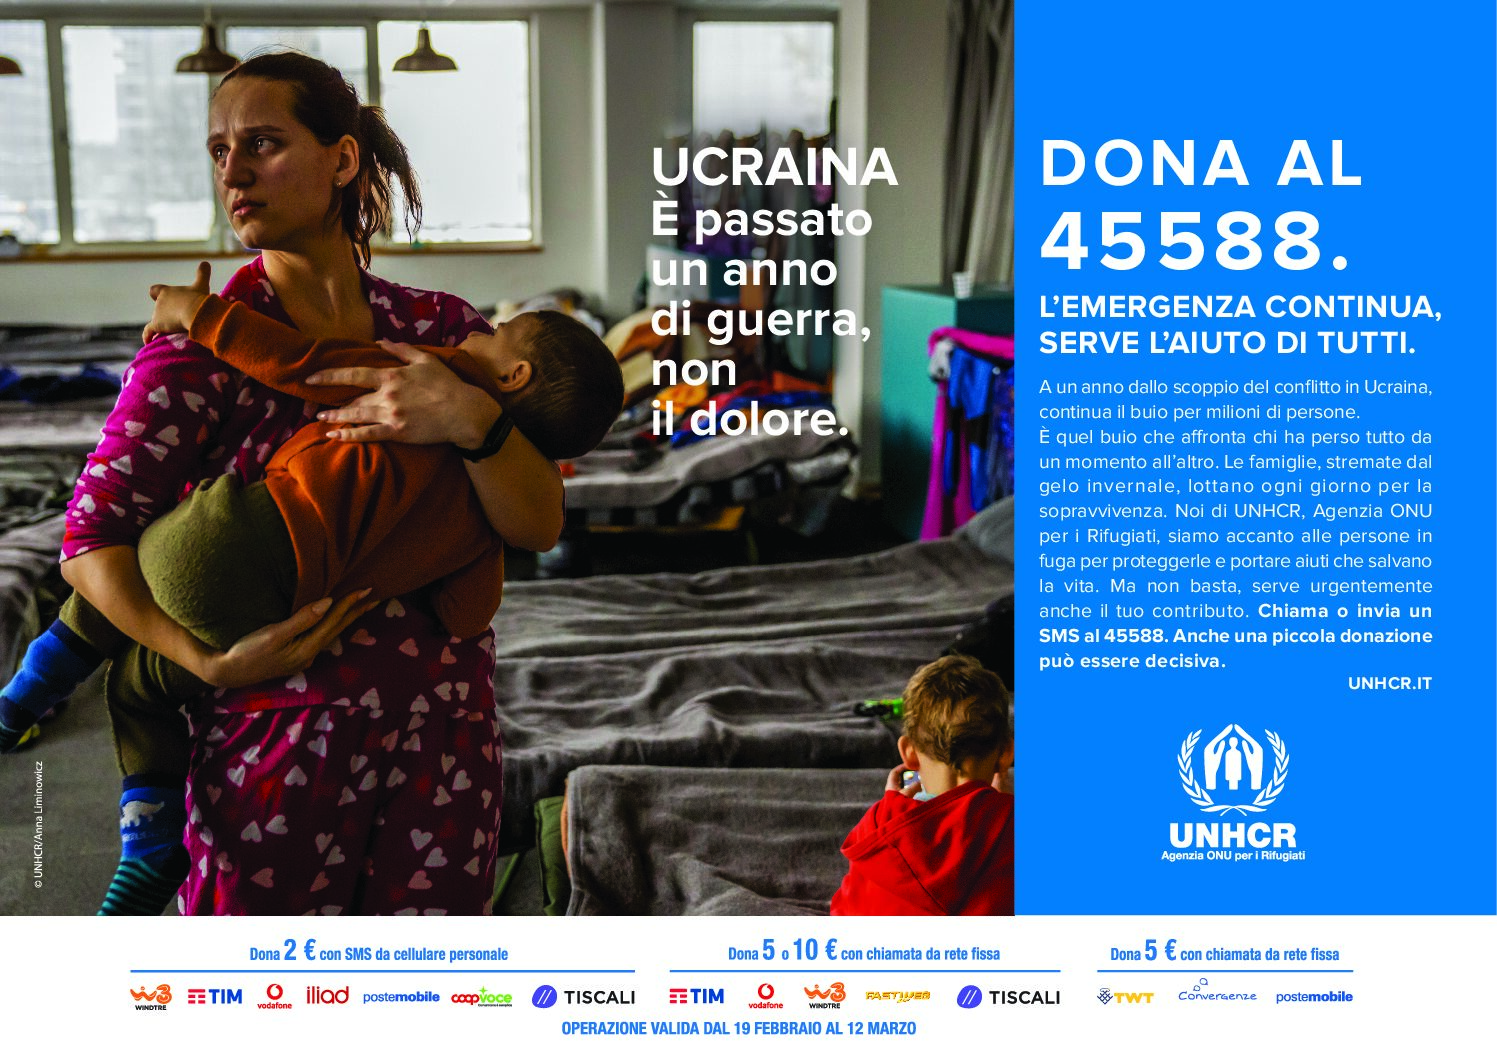 UCRAINA: UNHCR, UN ANNO DOPO L’EMERGENZA UMANITARIA CONTINUA